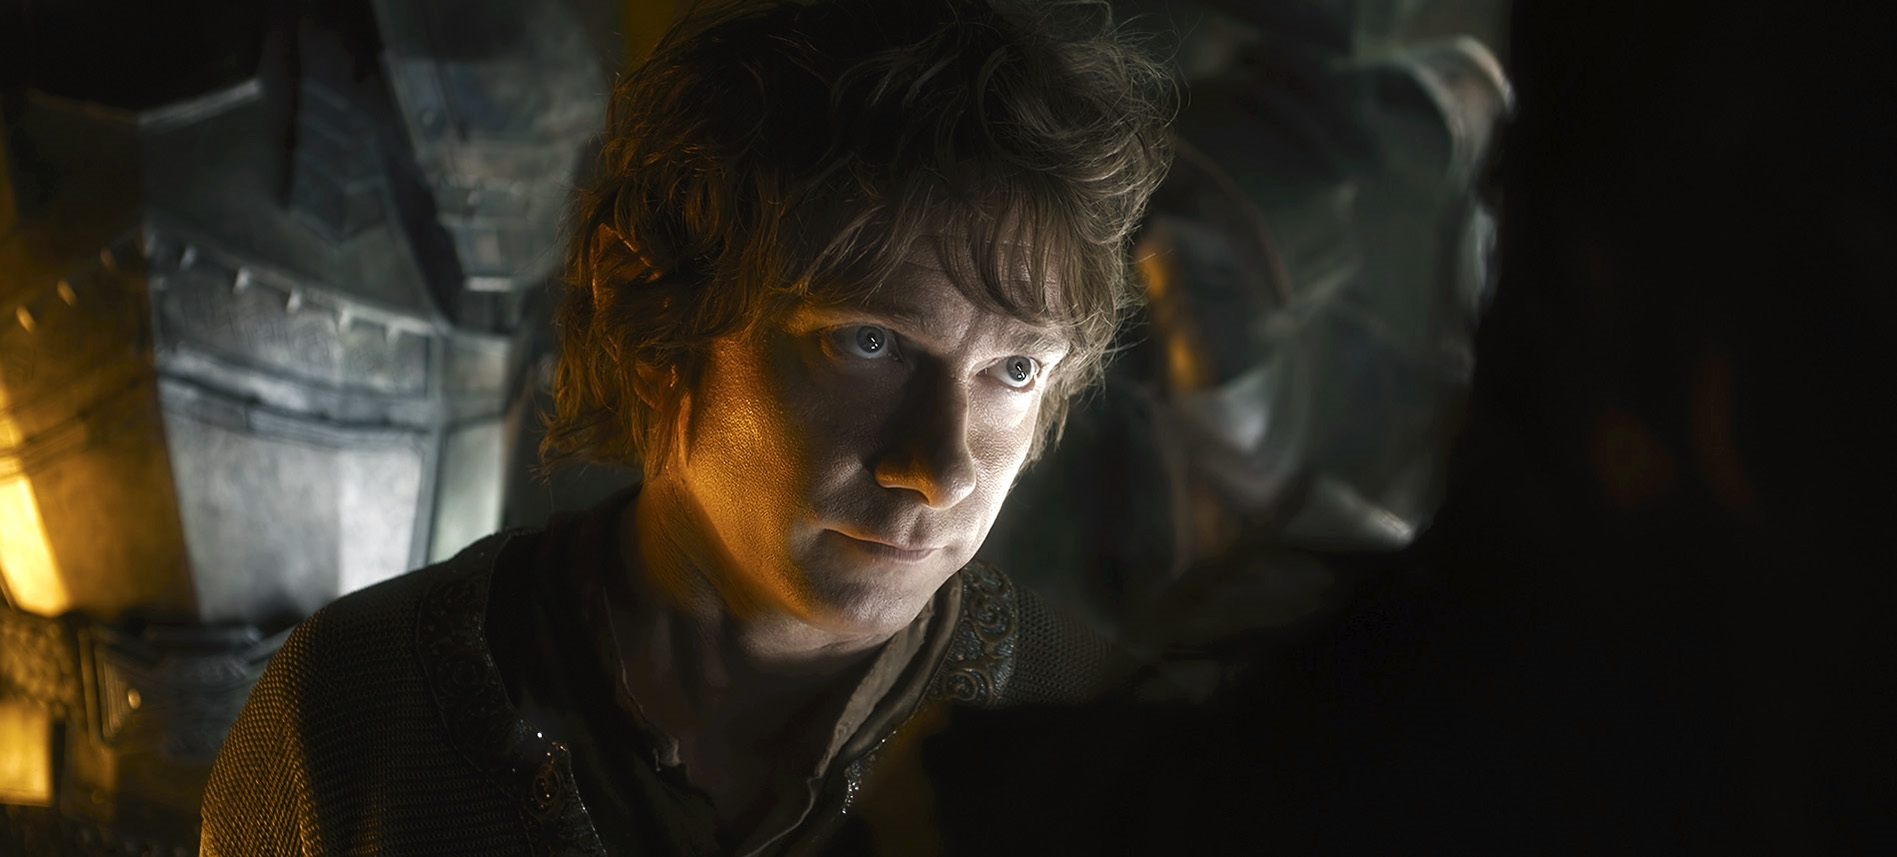 Image du film Le Hobbit : la bataille des cinq armées 2627129a-c2f9-4282-9499-77b6dc69519b